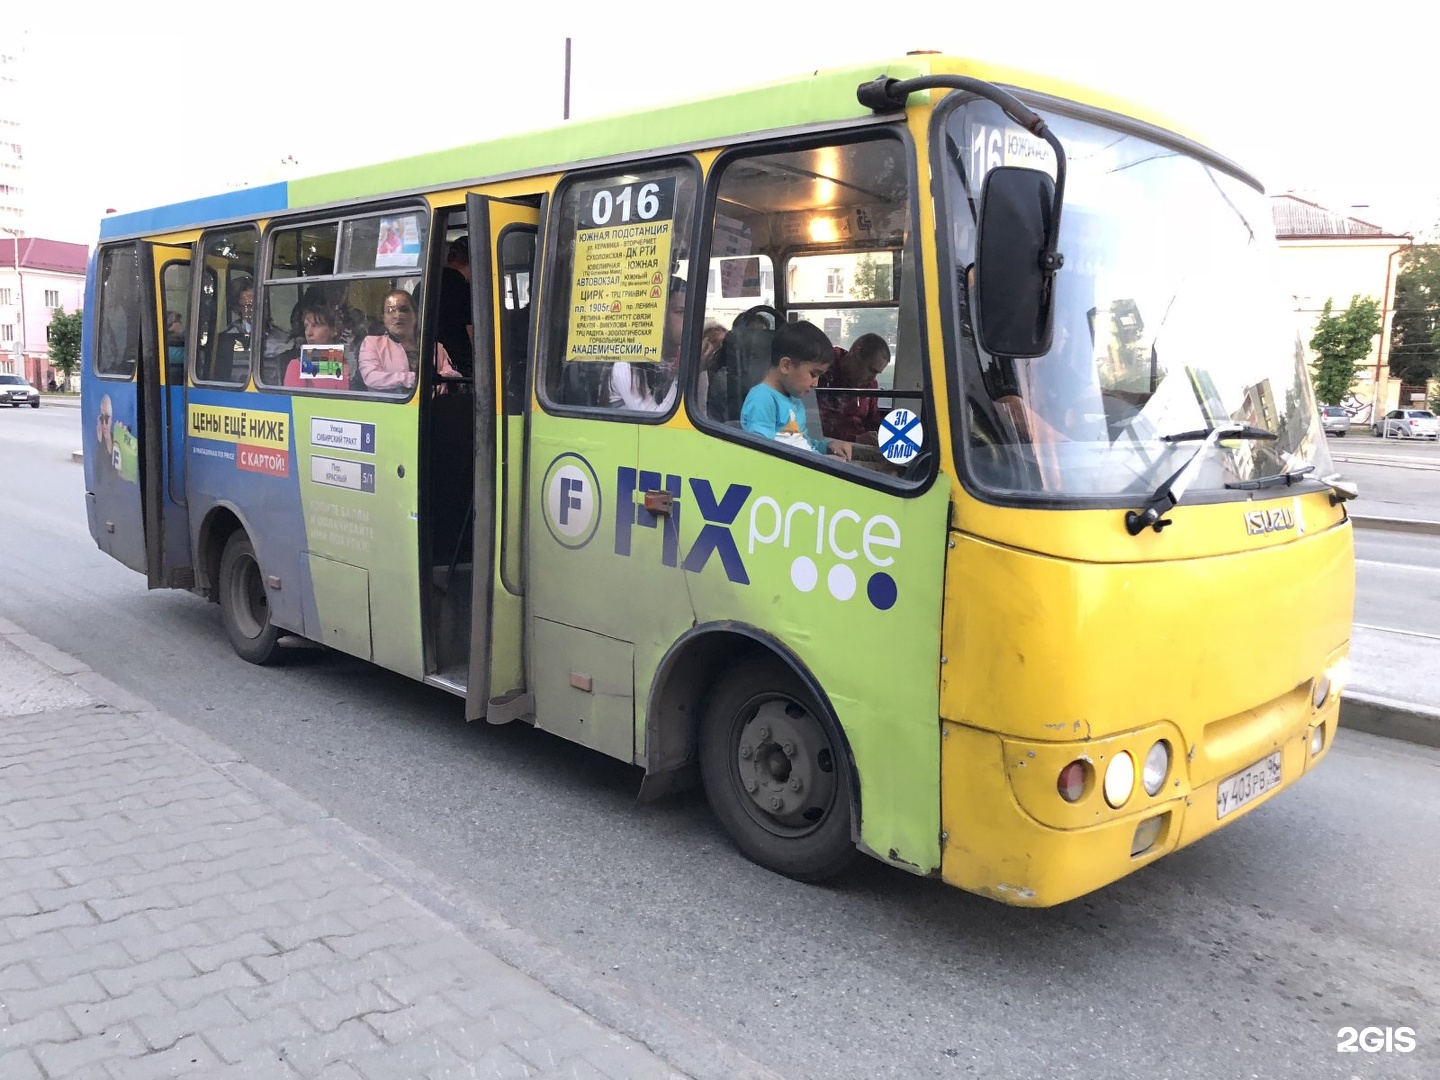 Автобусы екатеринбург изменения